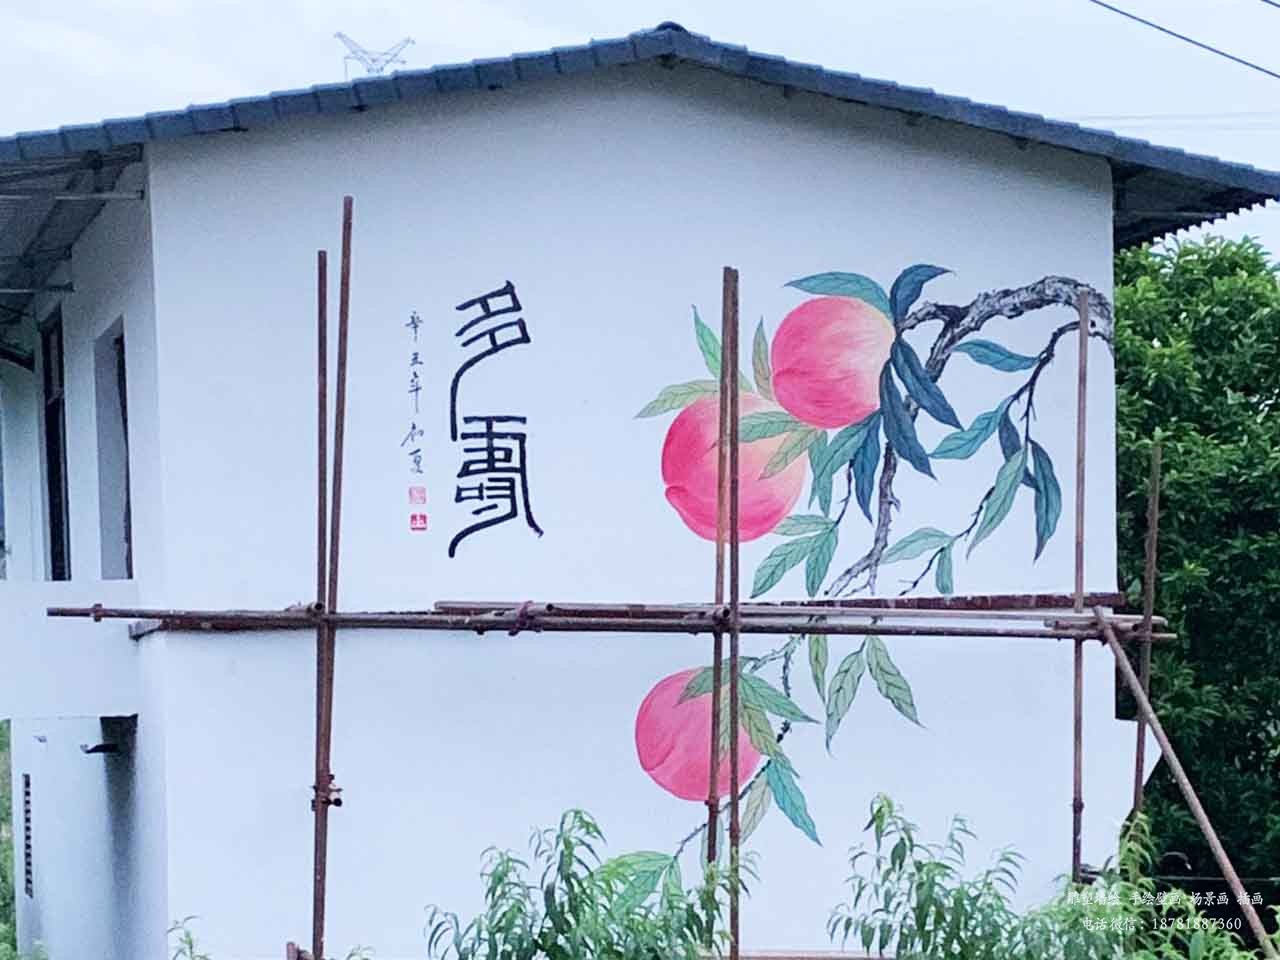 振新美丽乡村寿桃工笔画壁画墙绘彩绘涂鸦成都澜泉文化